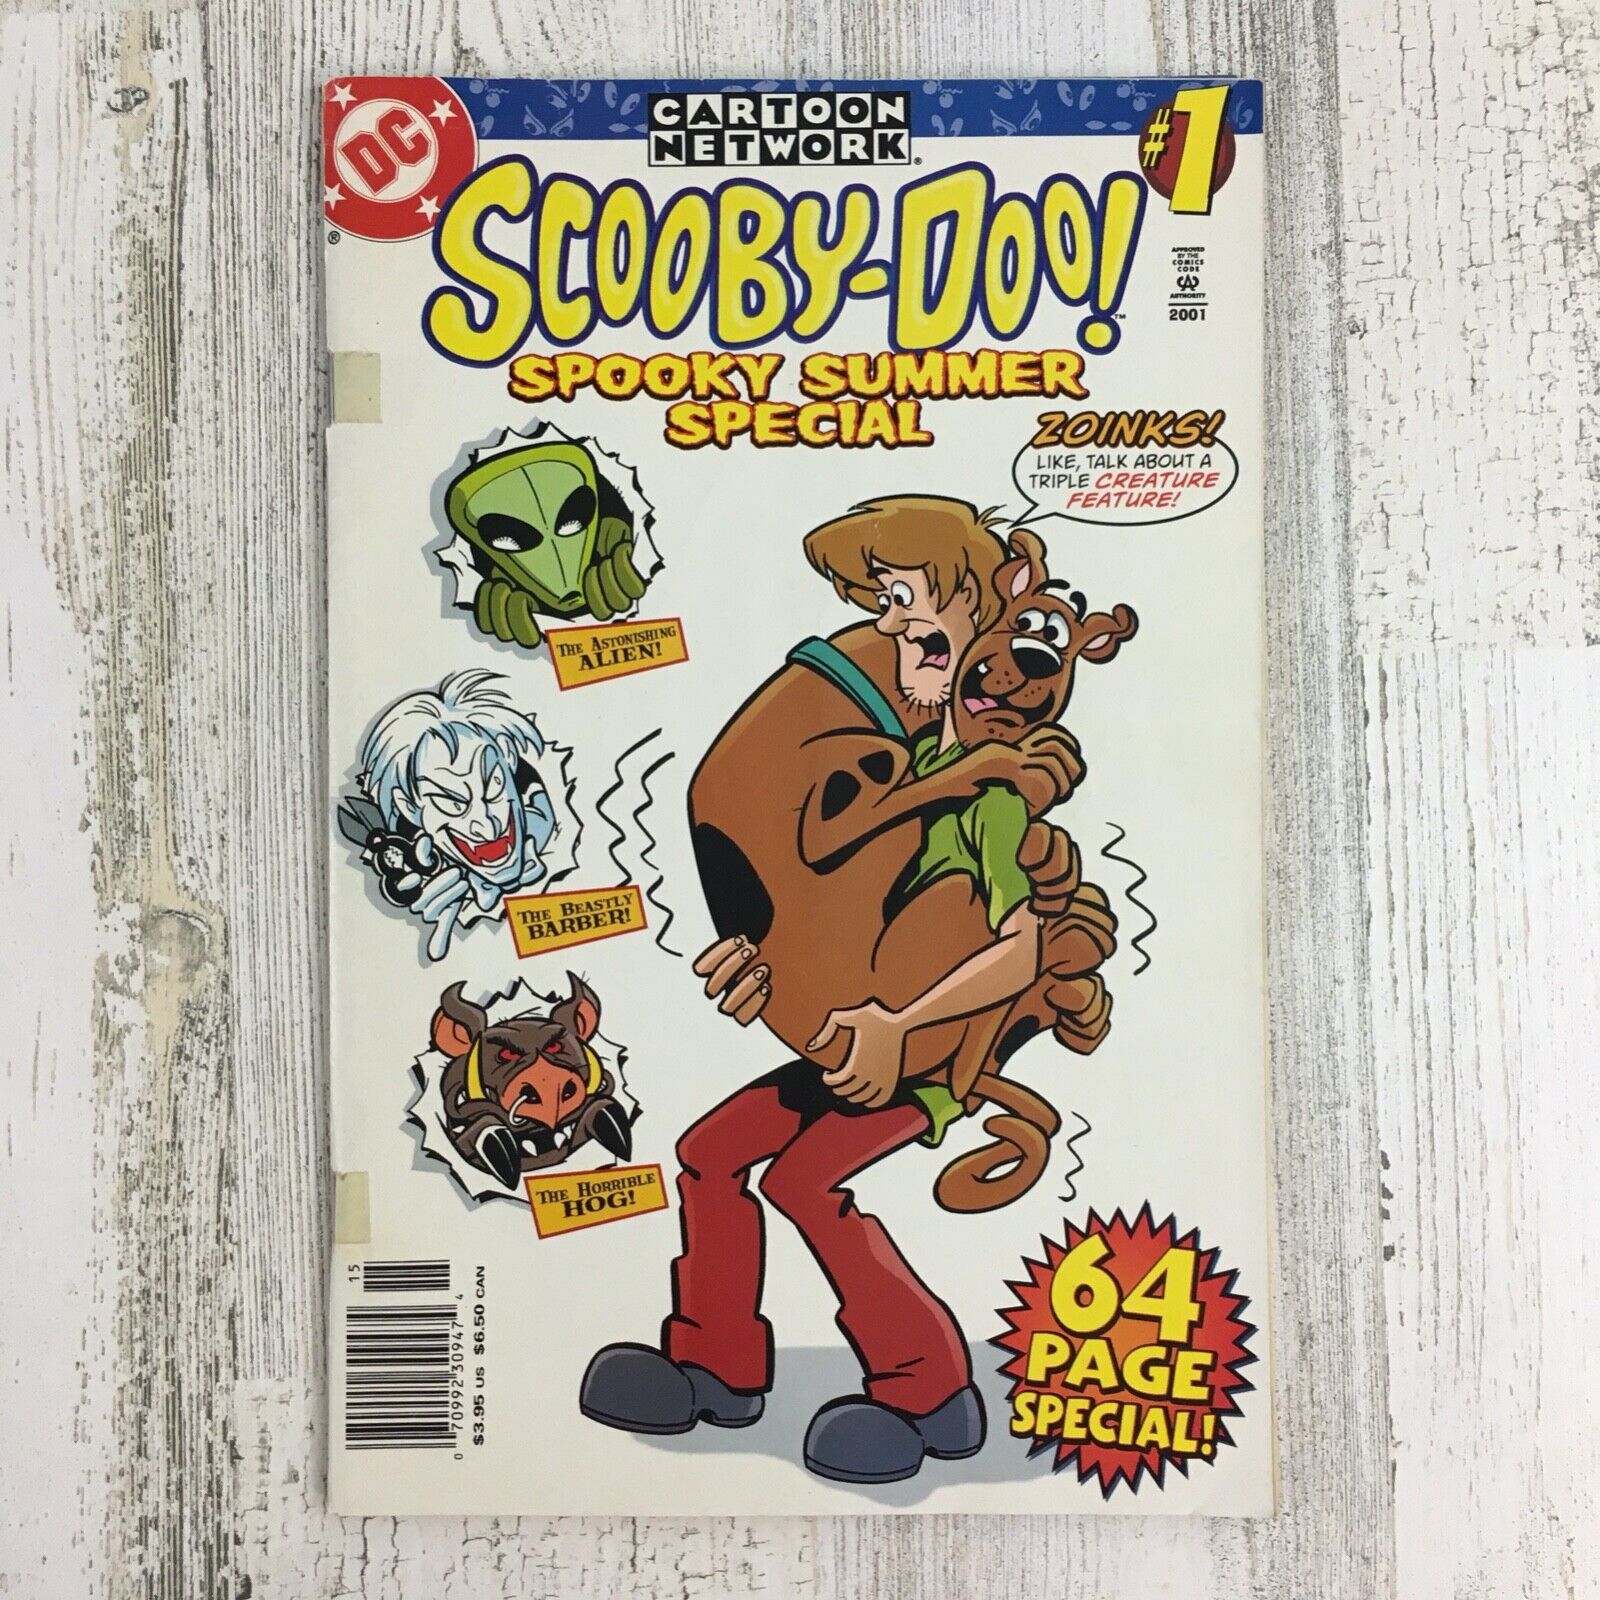 Scooby-Doo Spooky Summer Special #1 2001 Cartoon Network DC Comics